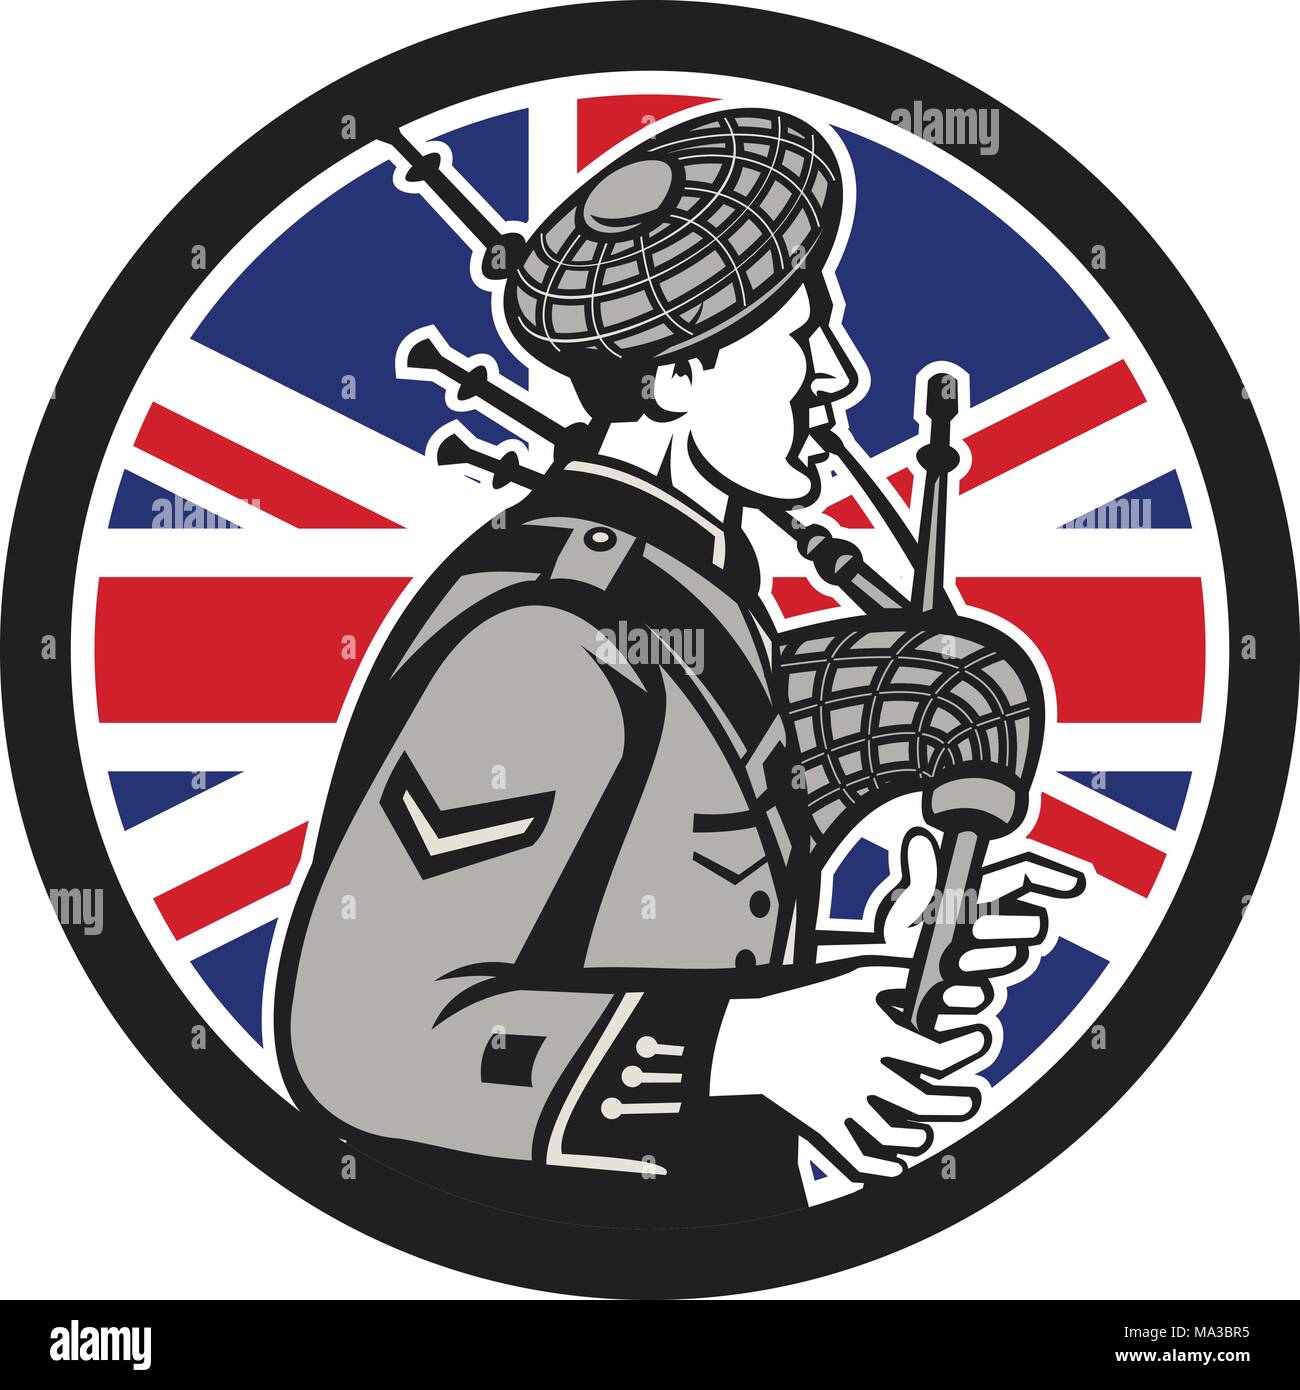 Icona di stile retrò illustrazione di un British bagpiper giocando il grande scozzese Highland bagpipes con Regno Unito Regno Unito, Gran Bretagna Union Jack flag Illustrazione Vettoriale